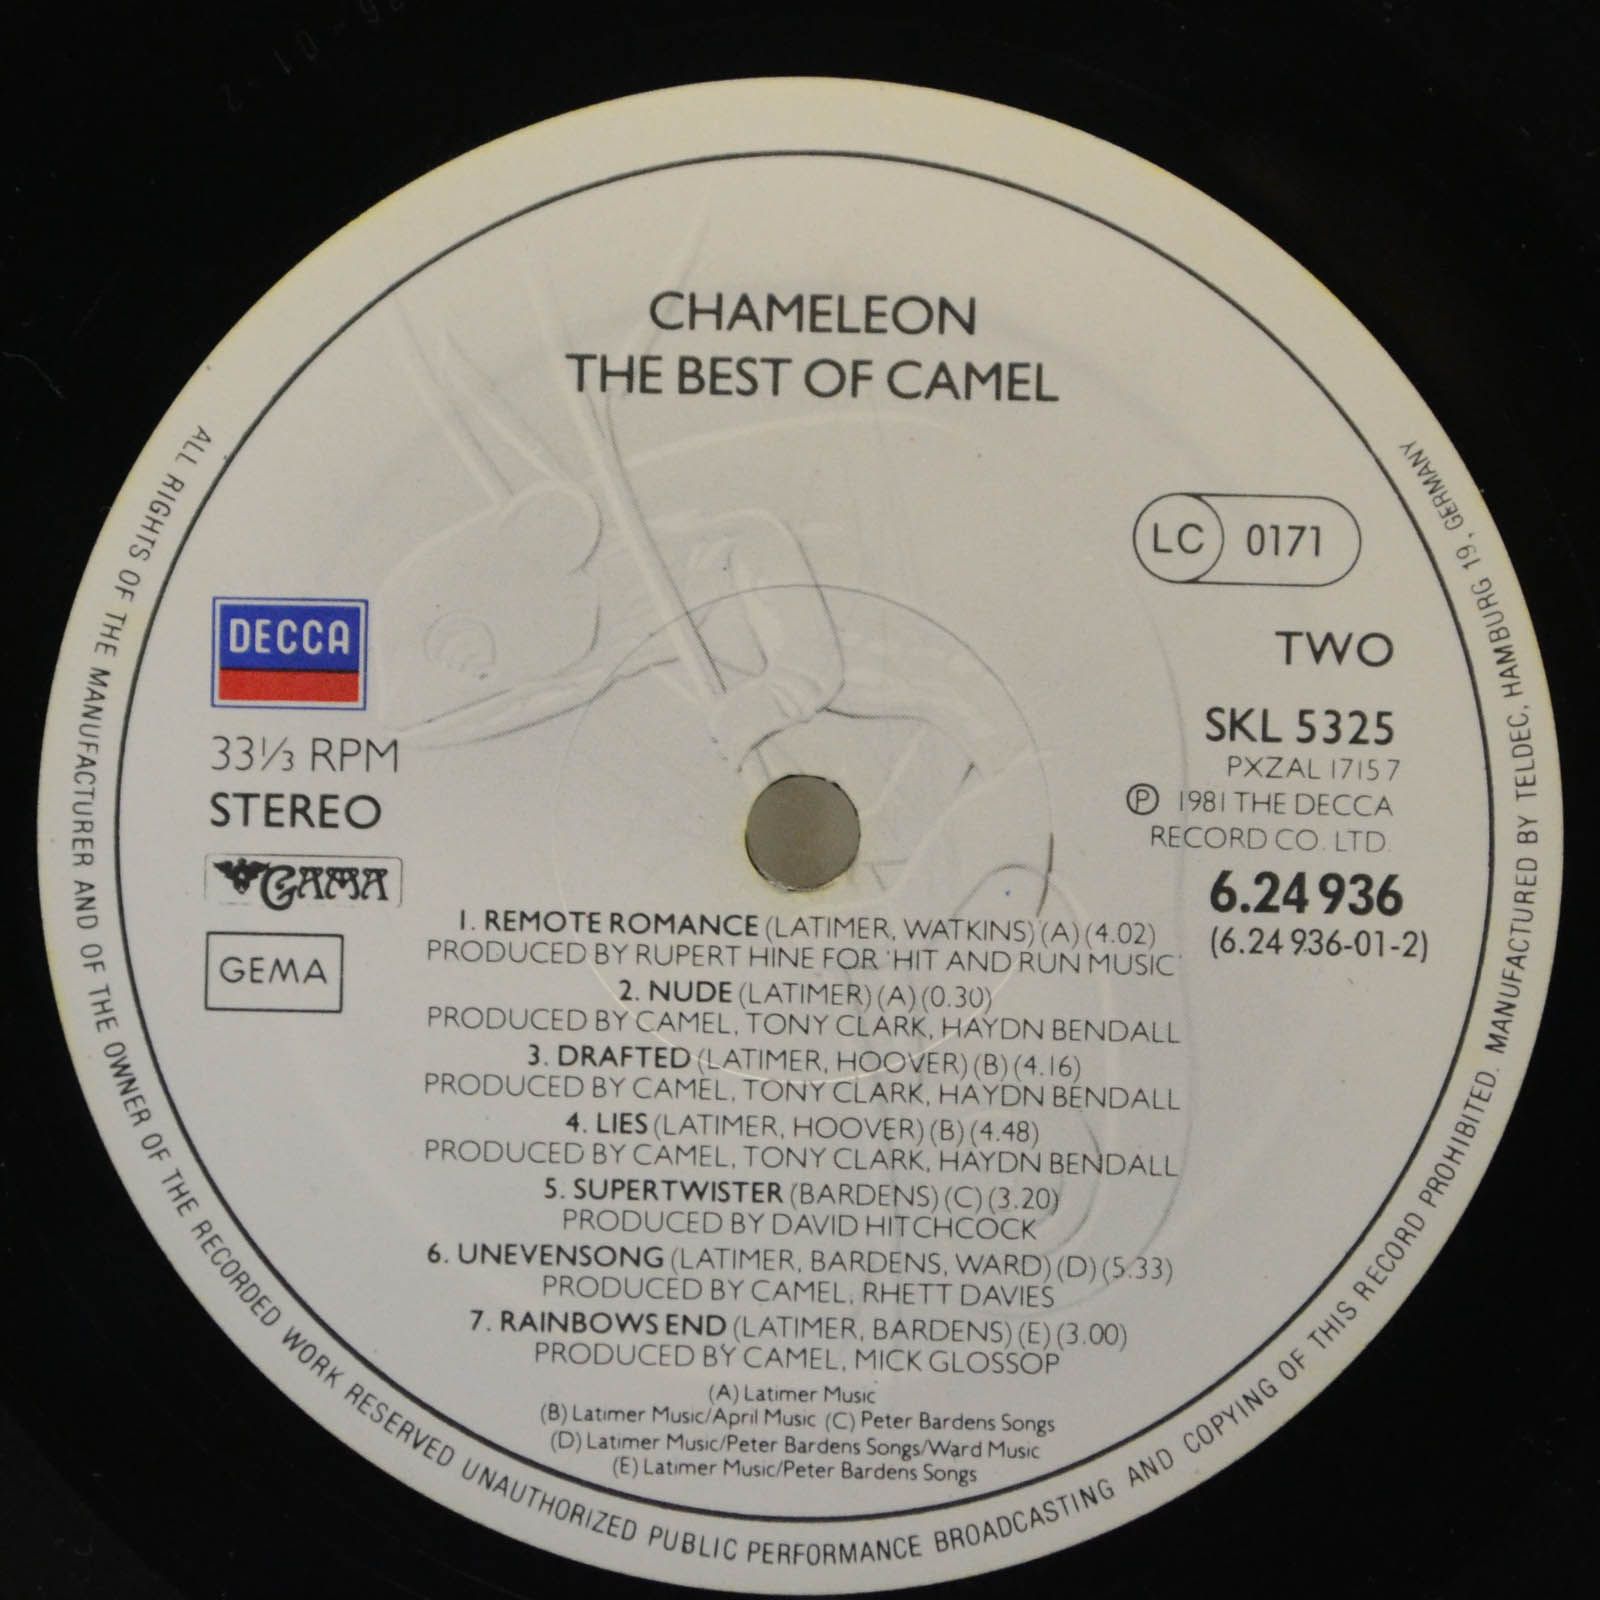 Camel — Chameleon The Best Of Camel, 1981